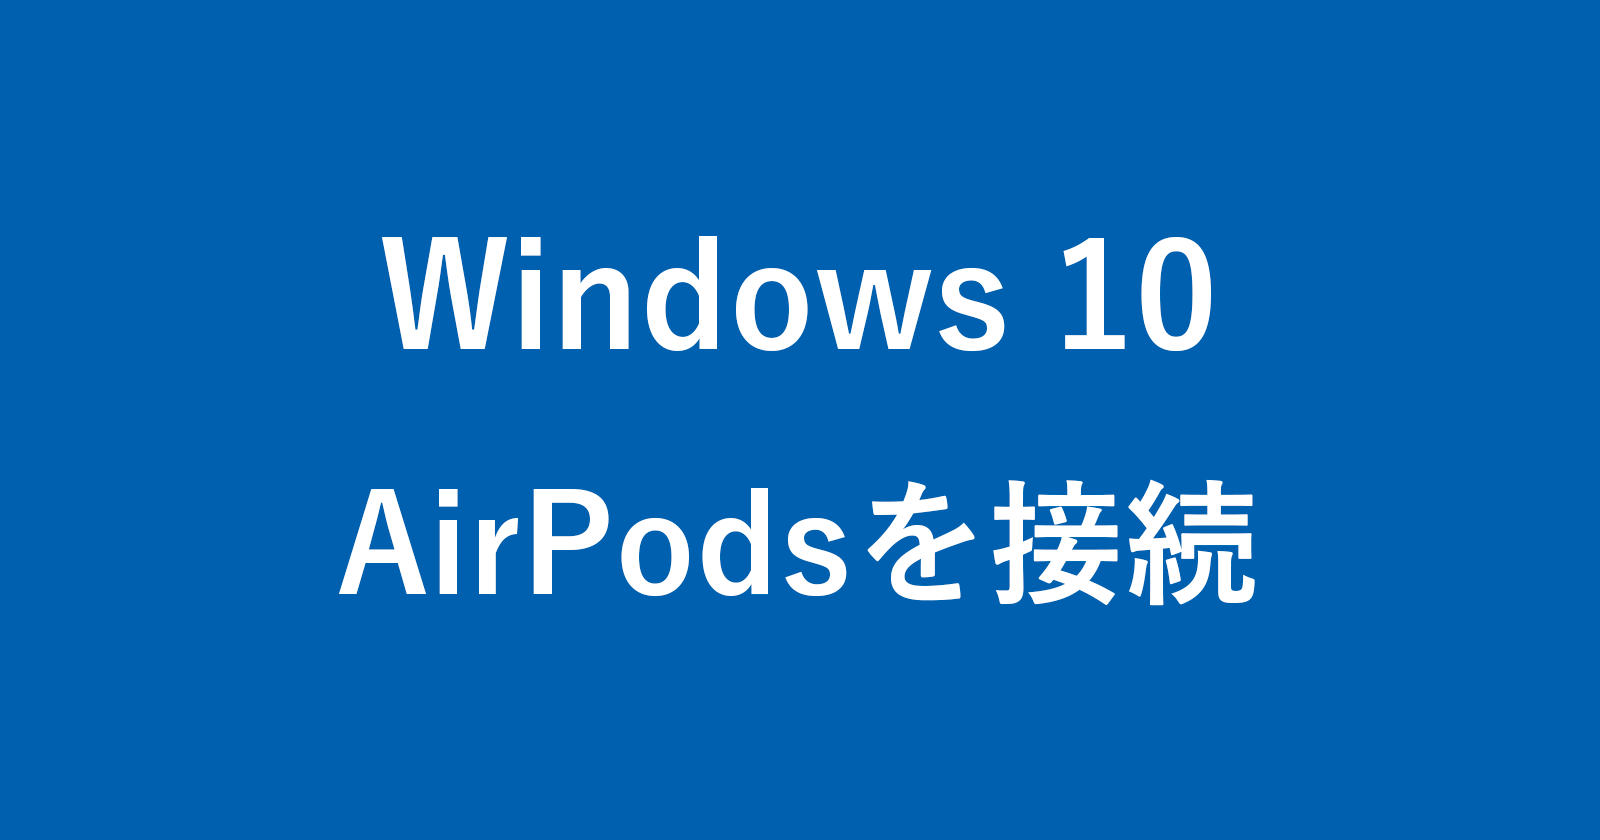 windows 10 airpods pairing